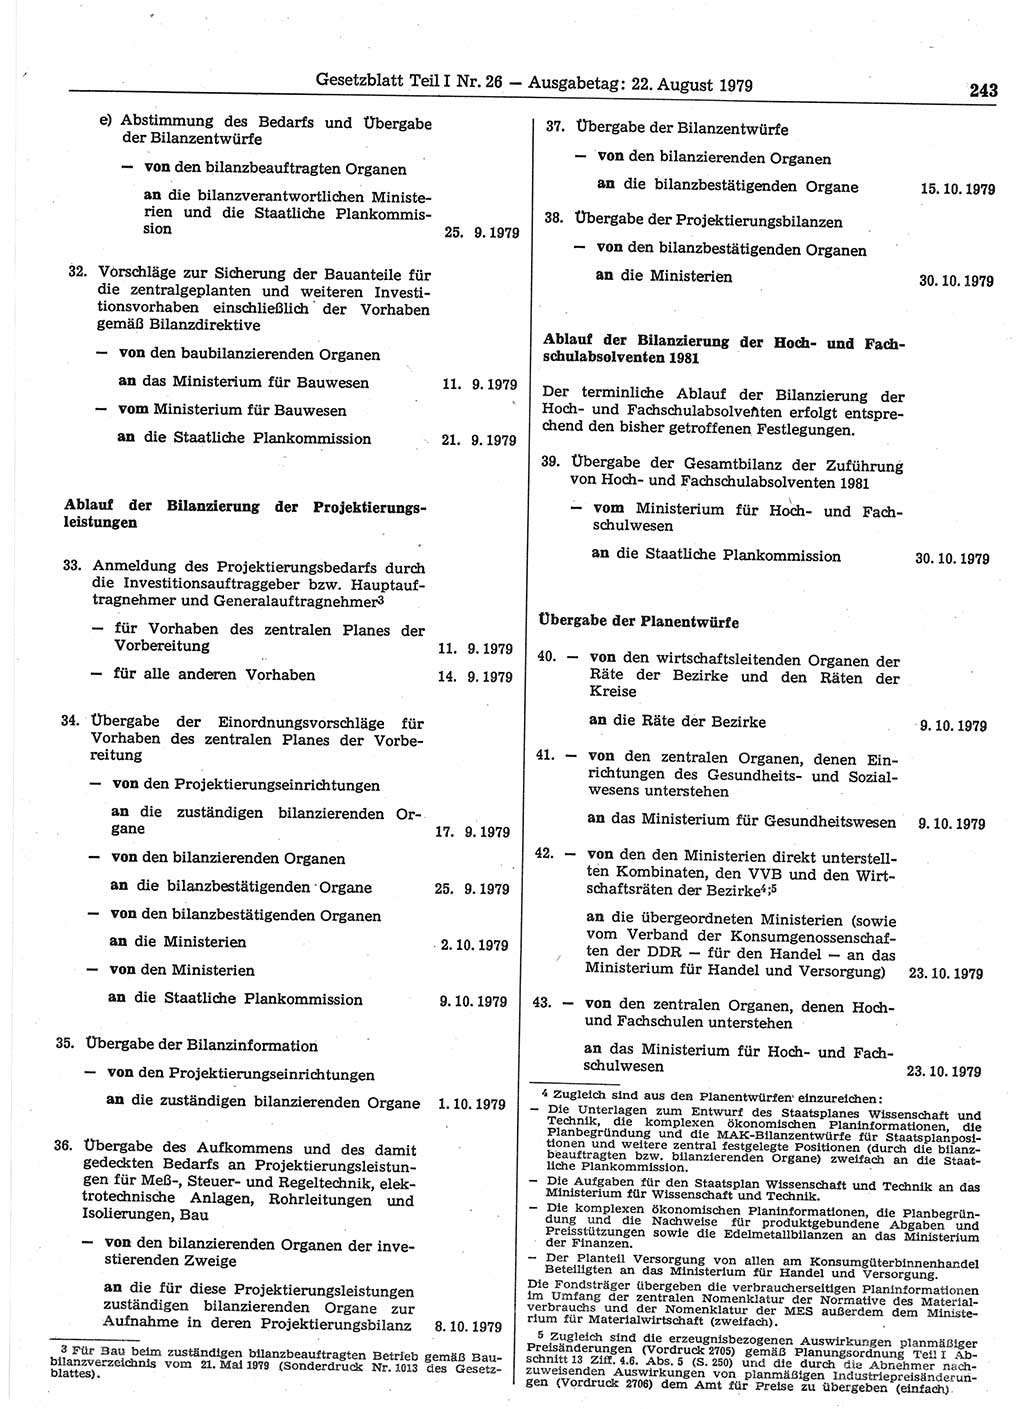 Gesetzblatt (GBl.) der Deutschen Demokratischen Republik (DDR) Teil Ⅰ 1979, Seite 243 (GBl. DDR Ⅰ 1979, S. 243)